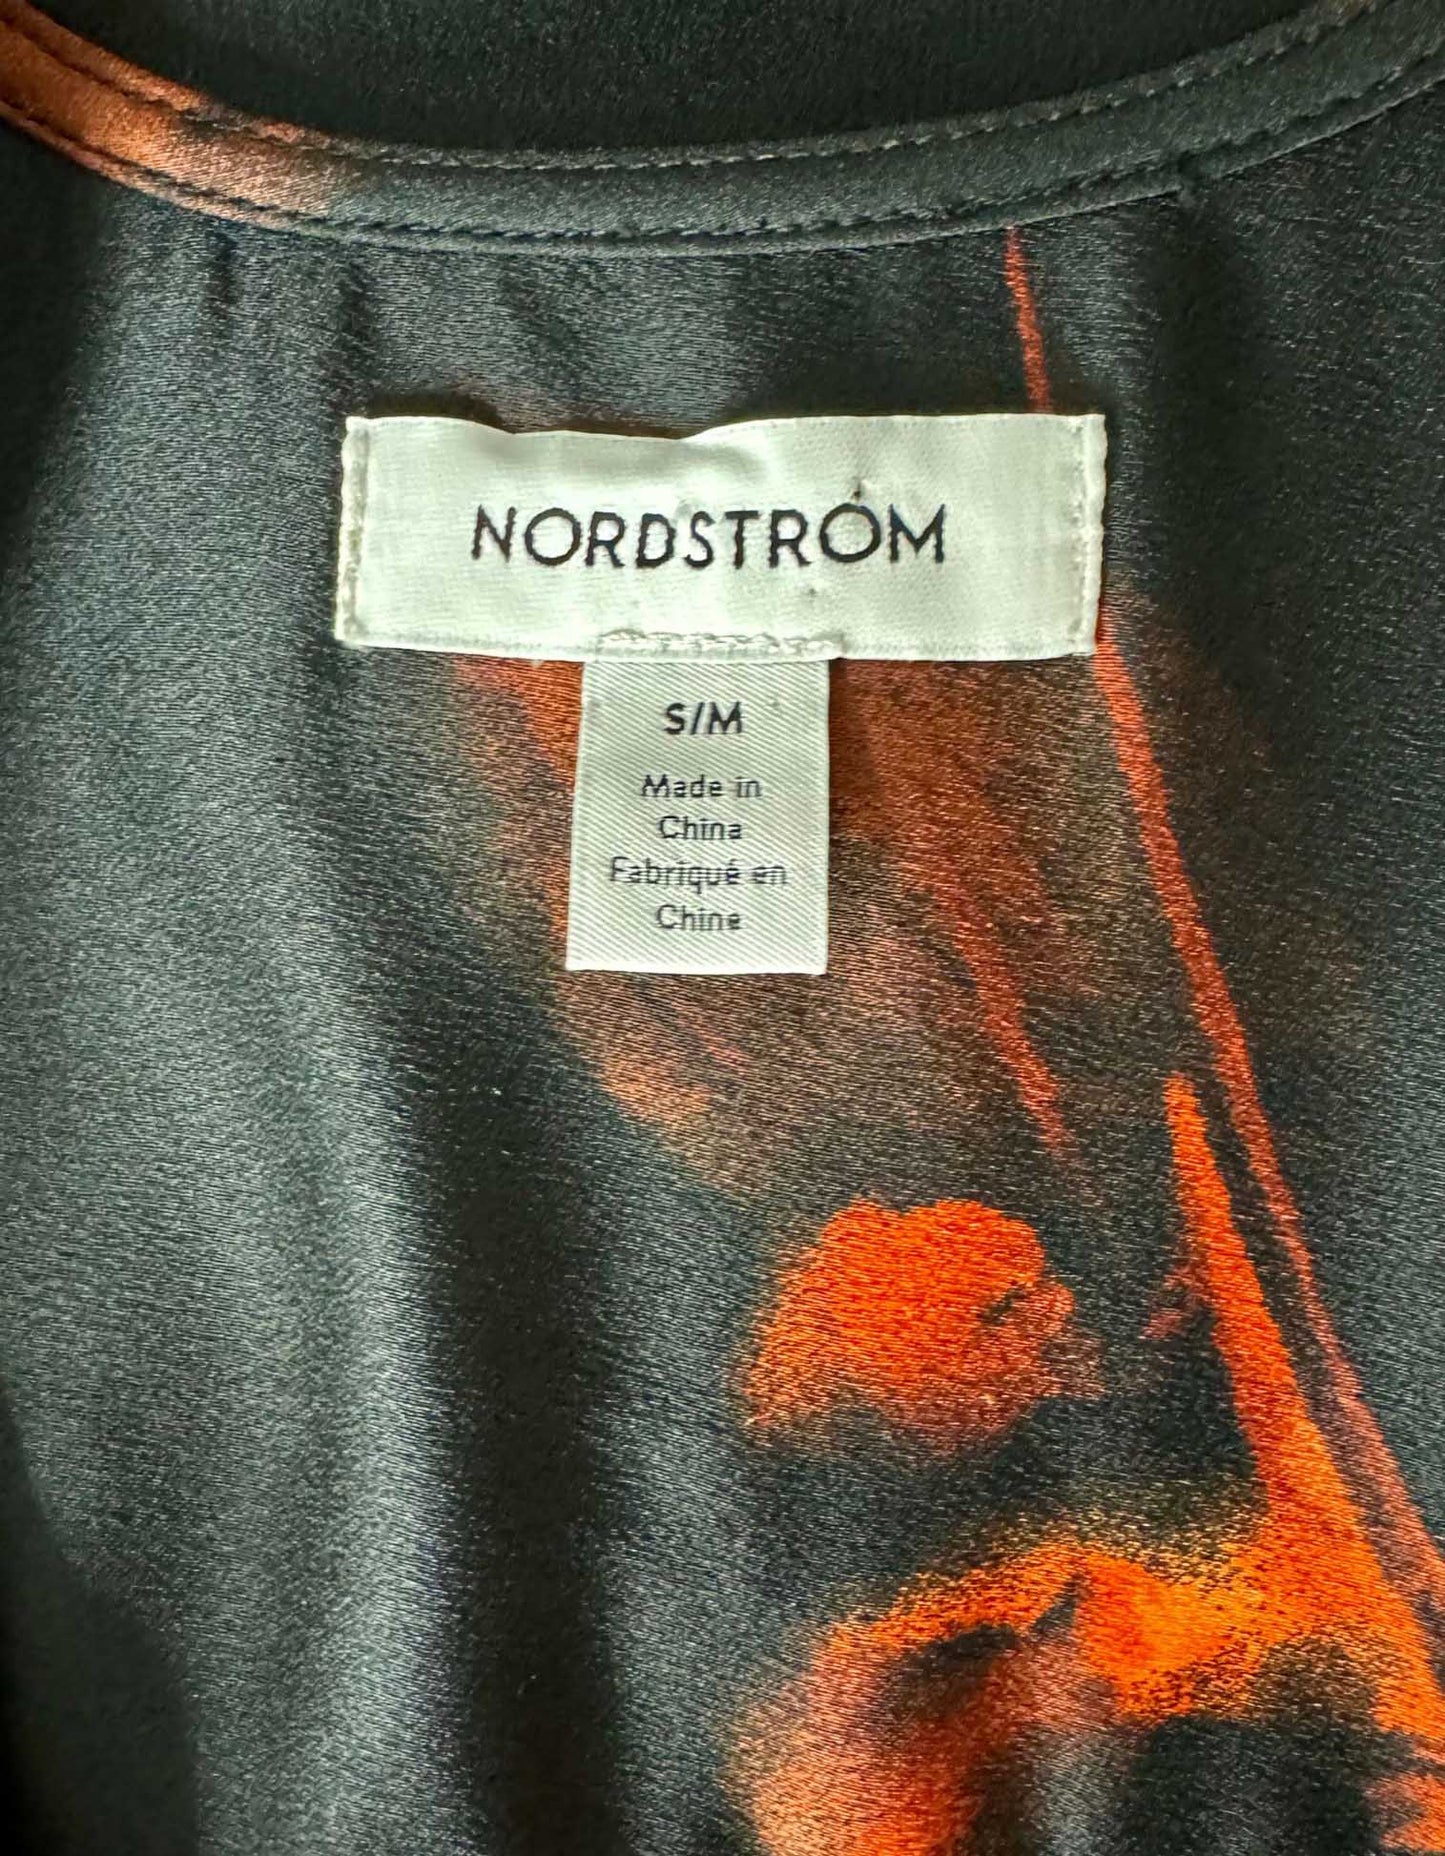 NORDSTROM Midi Dress - Small/Medium